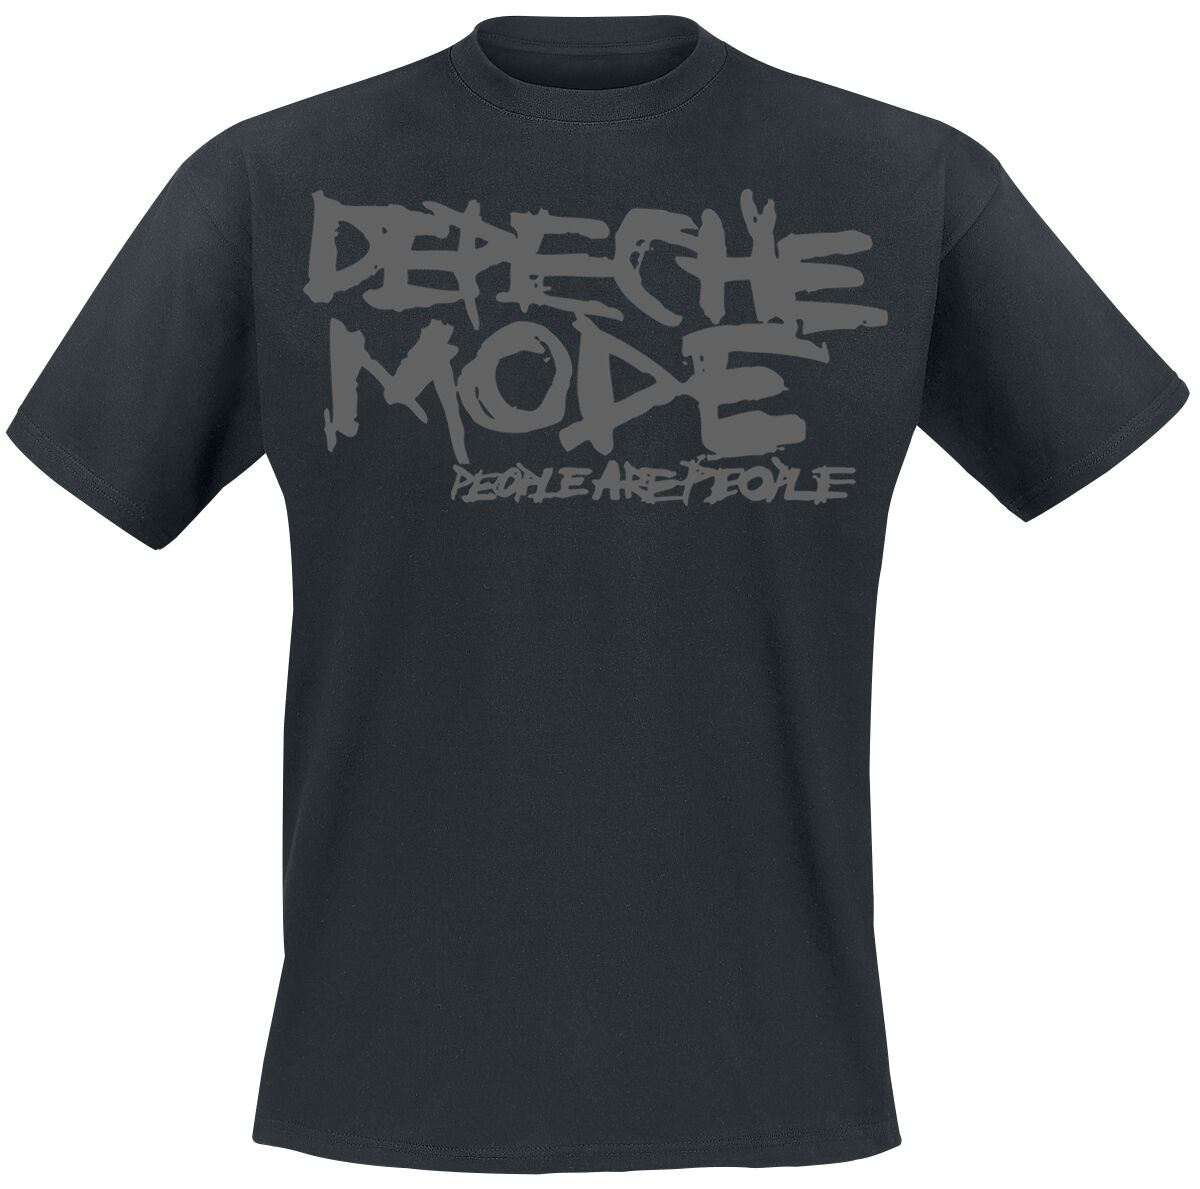 T-Shirt Manches courtes de Depeche Mode - People Are People - S à XXL - pour Homme - noir